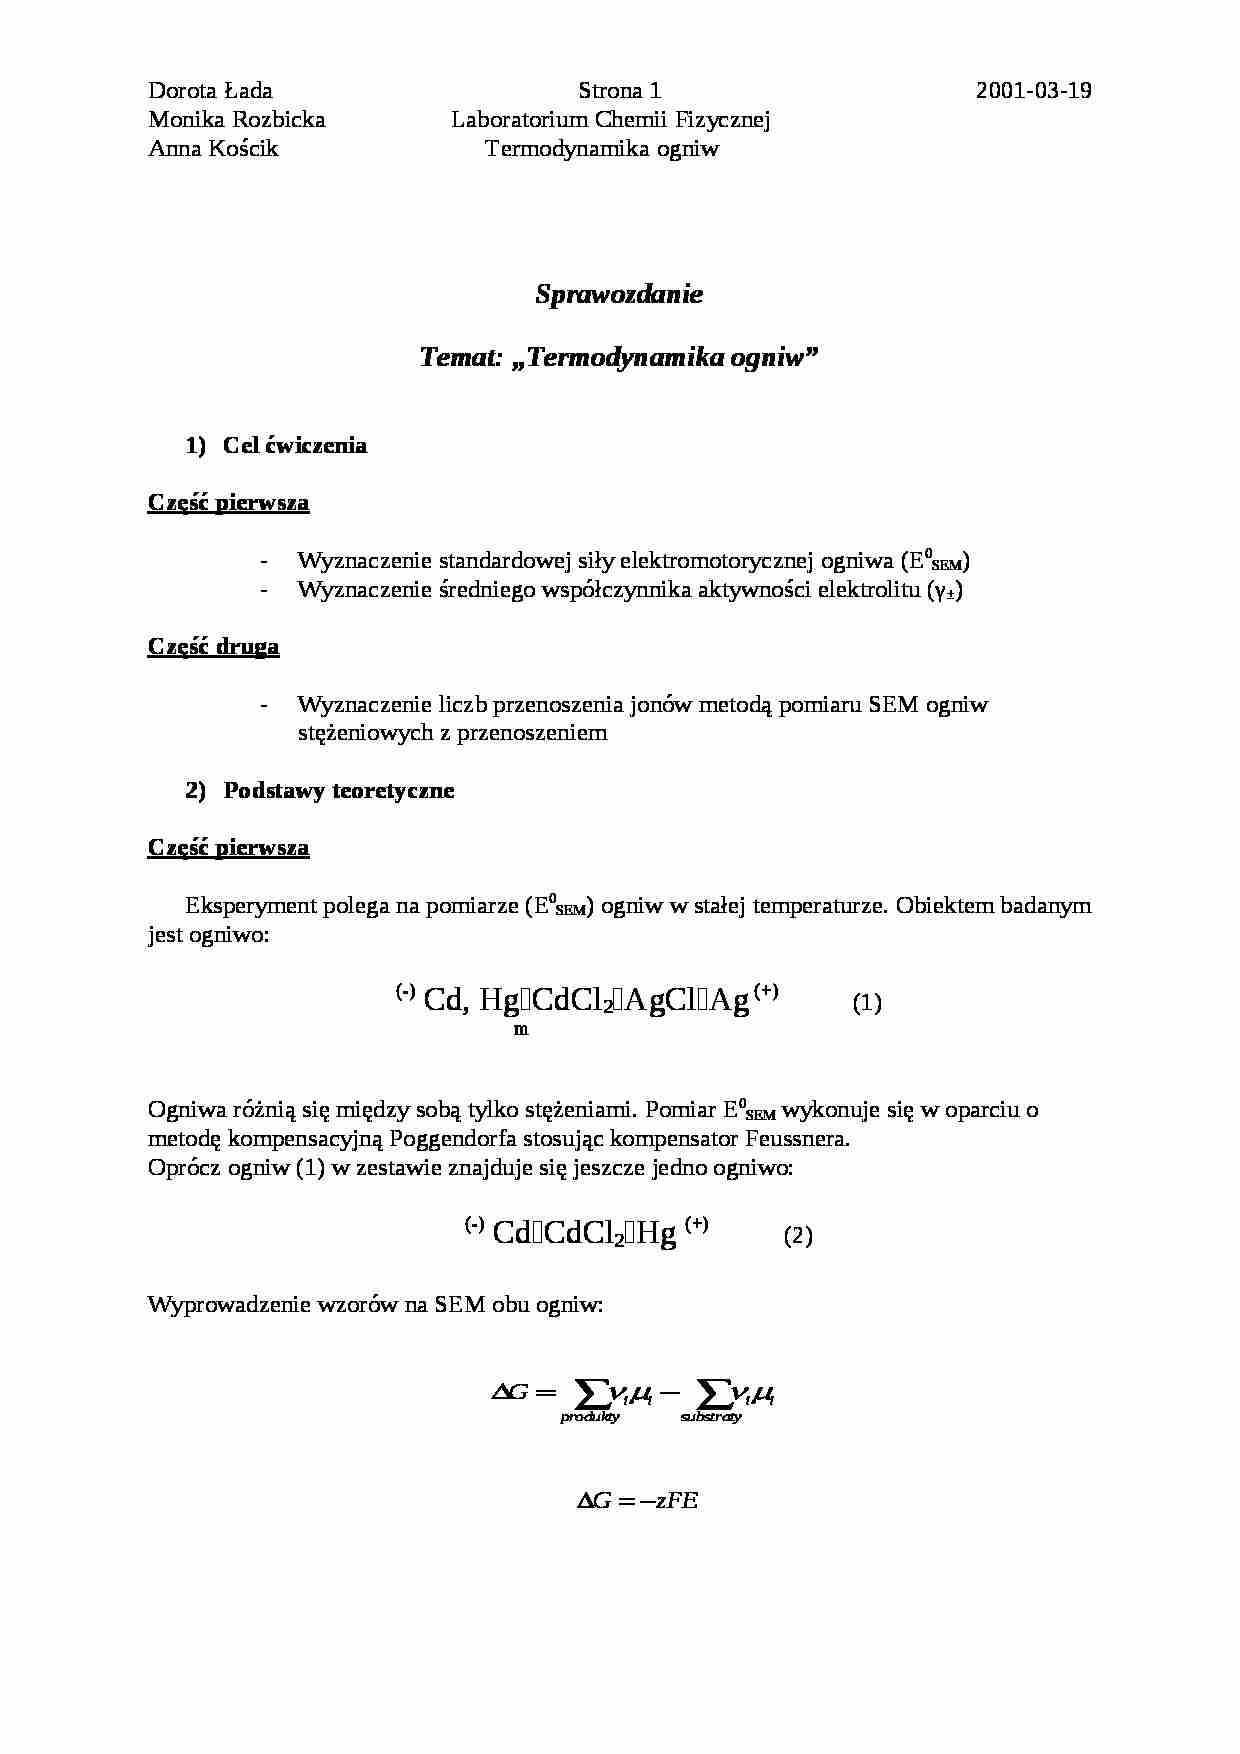 Termodynamika ogniw - sprawozdanie - strona 1